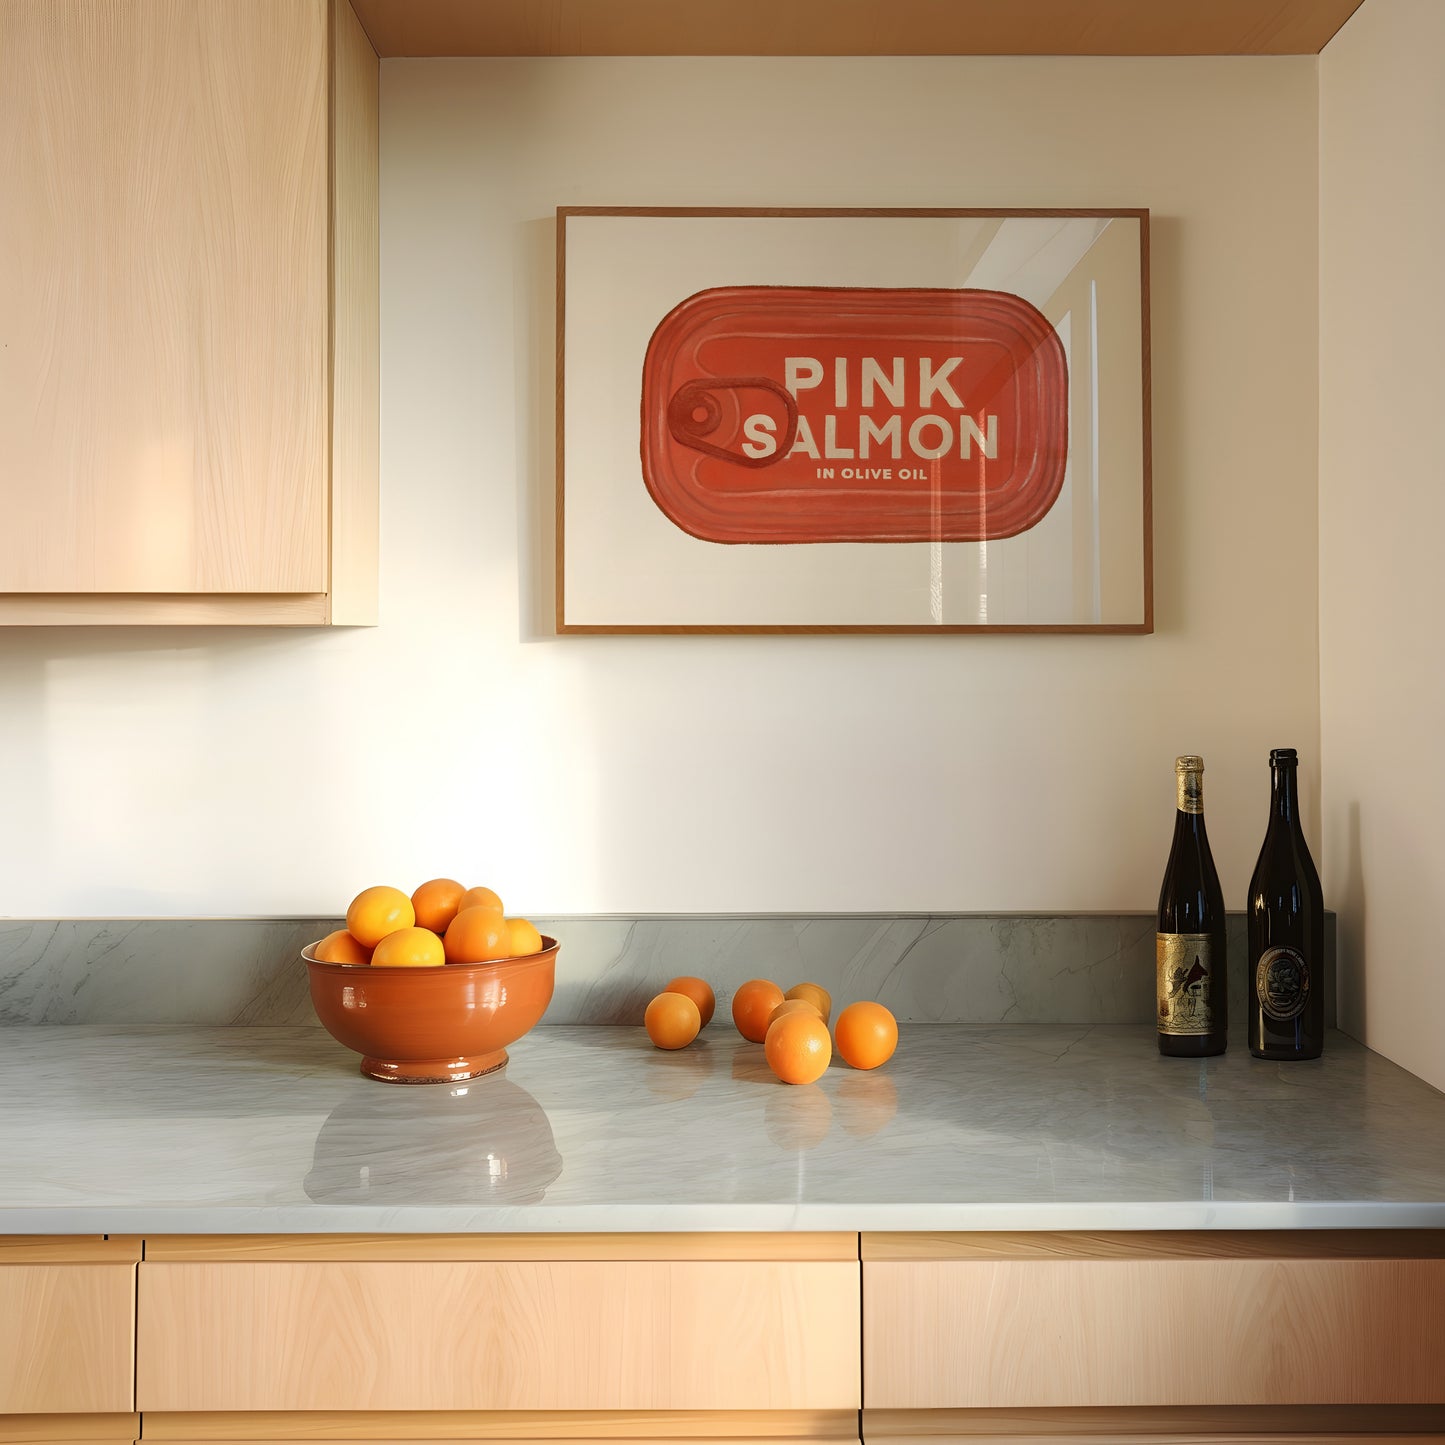 Pink Salmon in Tin Horizontal Poster